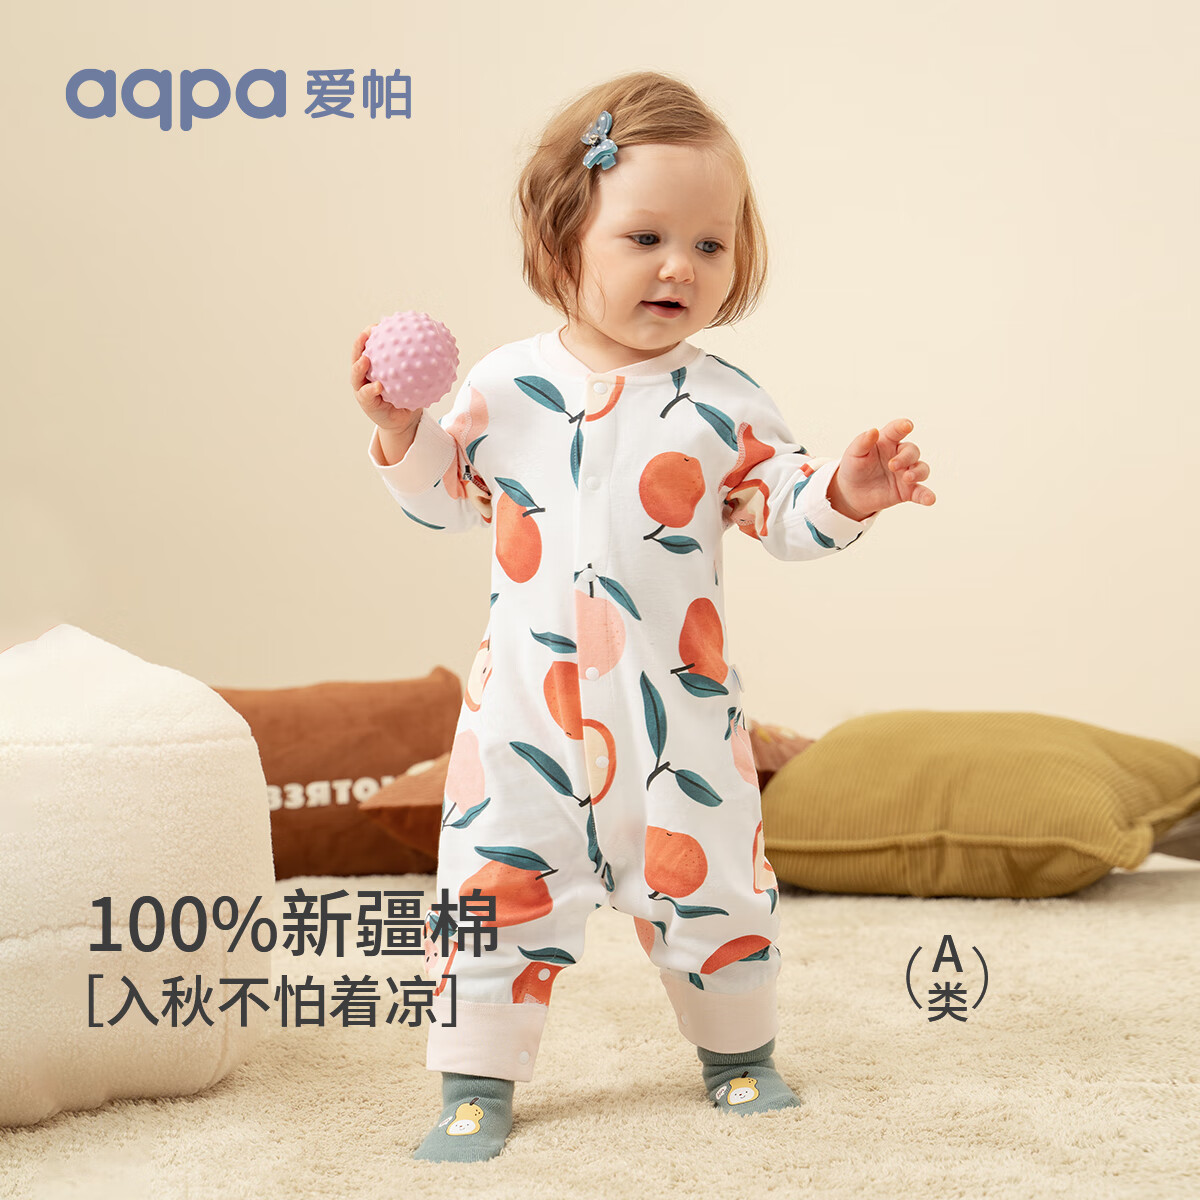 aqpa 三色可选：aqpa婴儿长袖爬服春秋男女宝宝四季内衣婴儿保暖连体衣 45.61